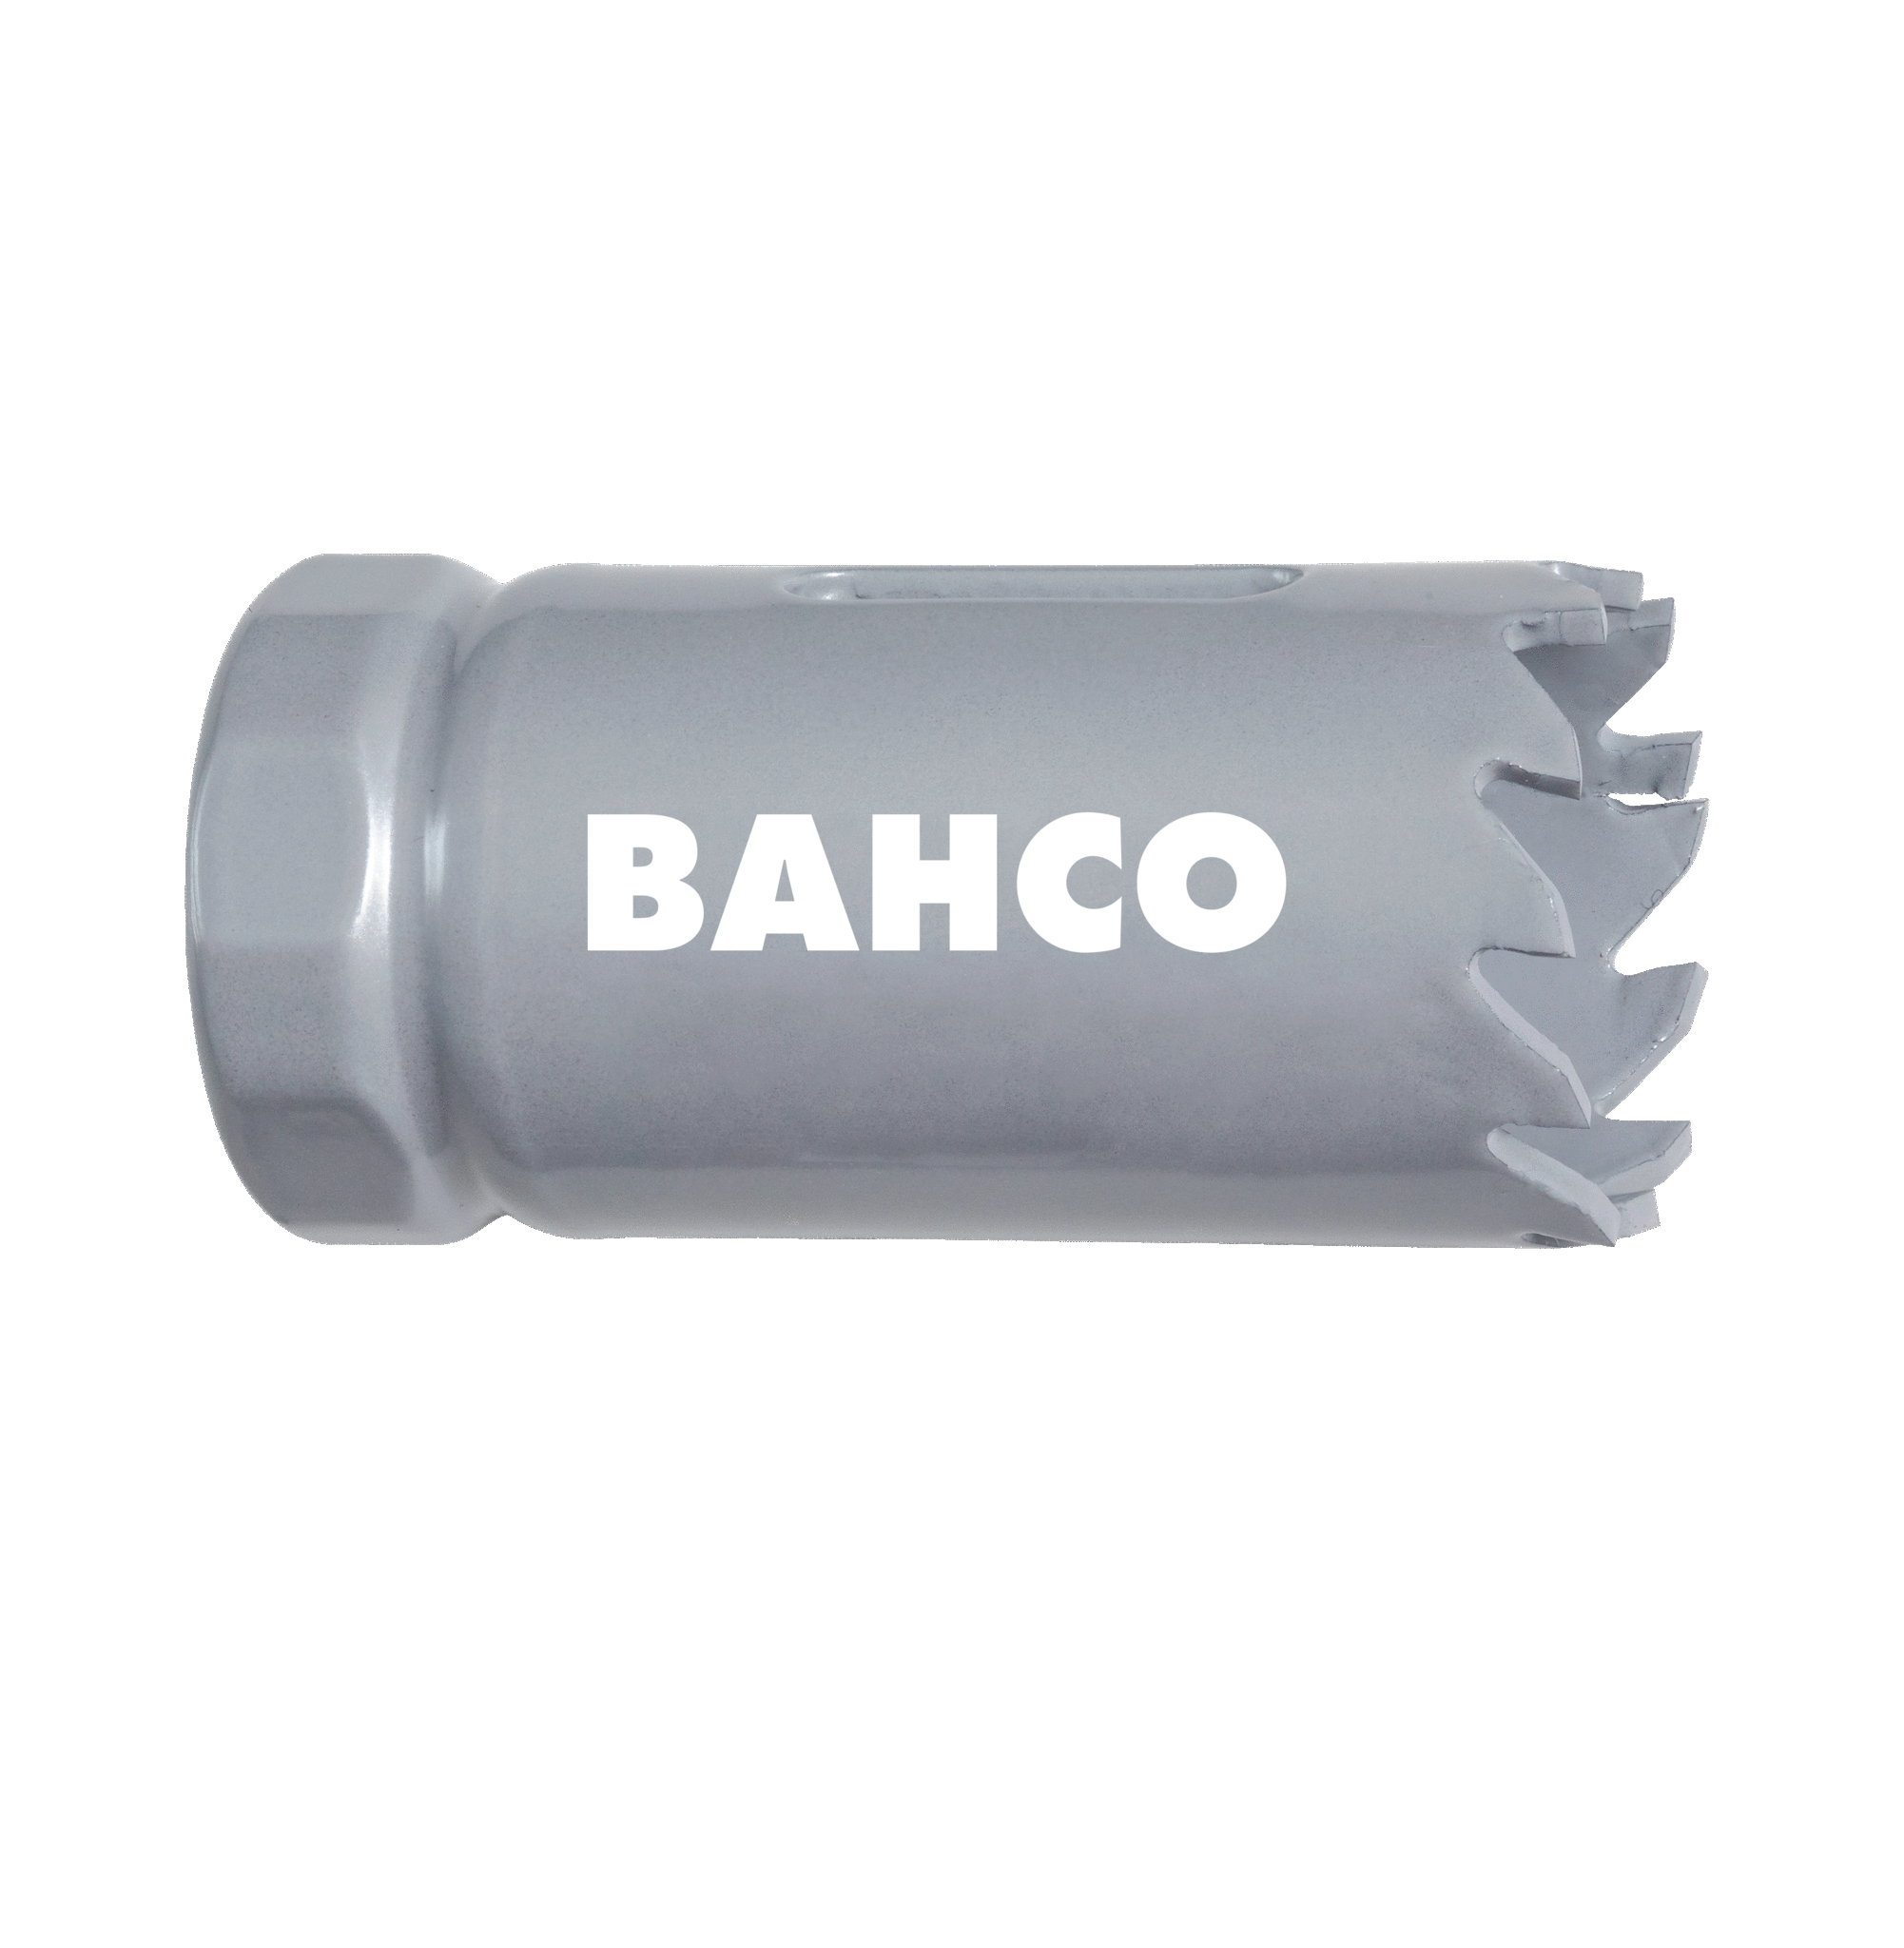 Кольцевые пилы с твердосплавными напайками BAHCO 3832-83